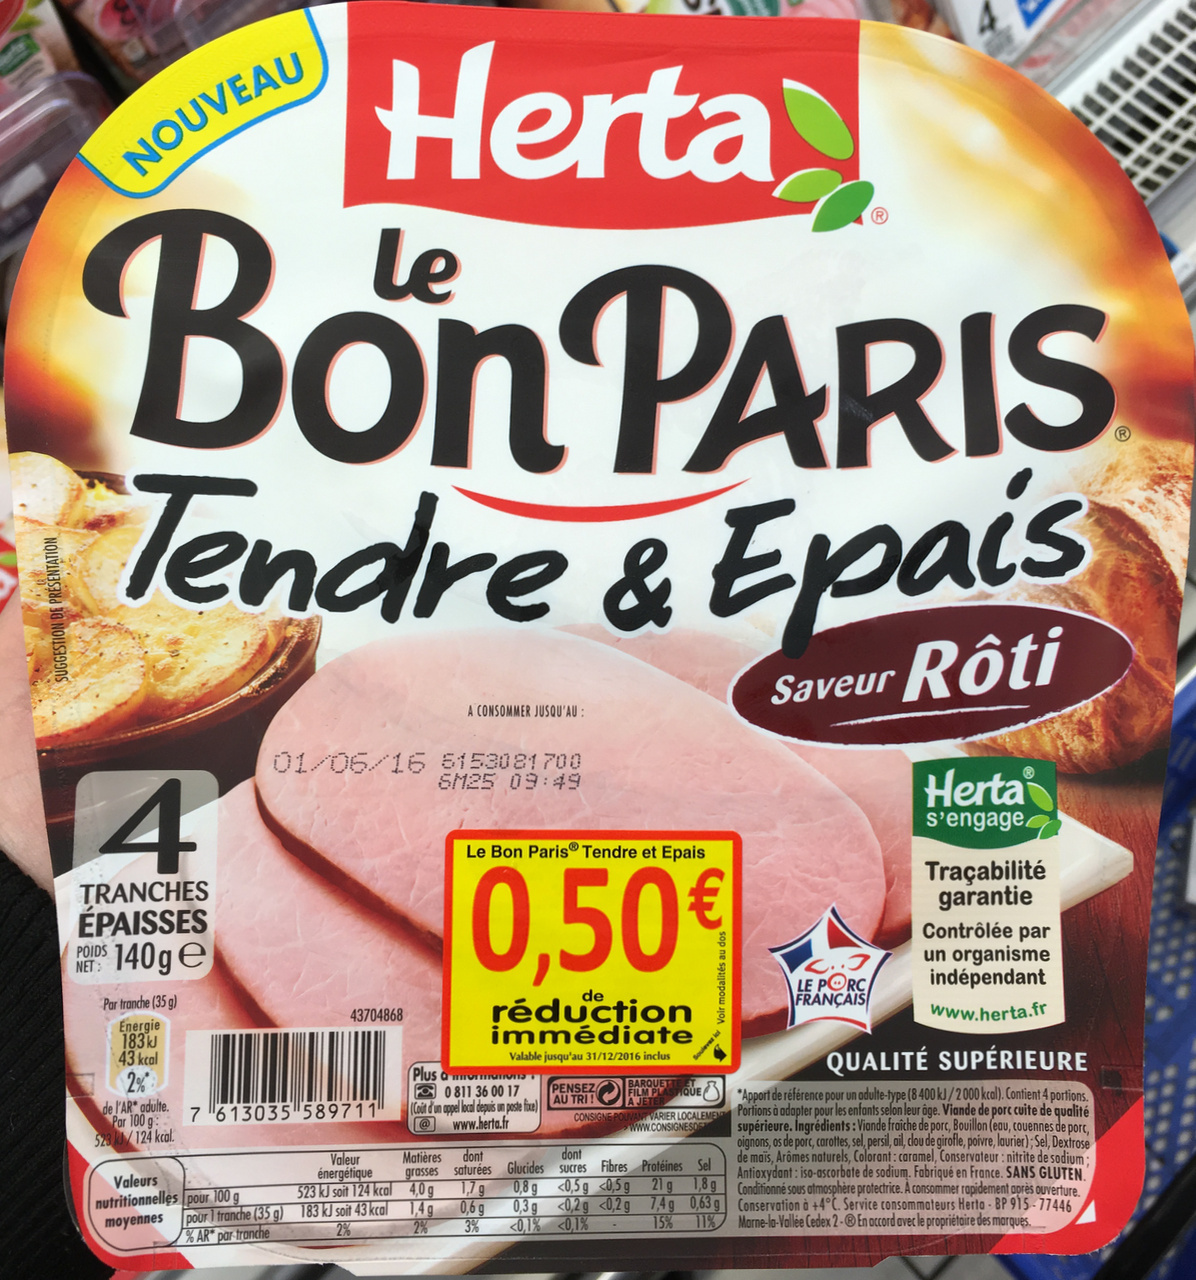 Le Bon Paris - Viande de porc cuite de qualité supérieure saveur rôti - Product - fr